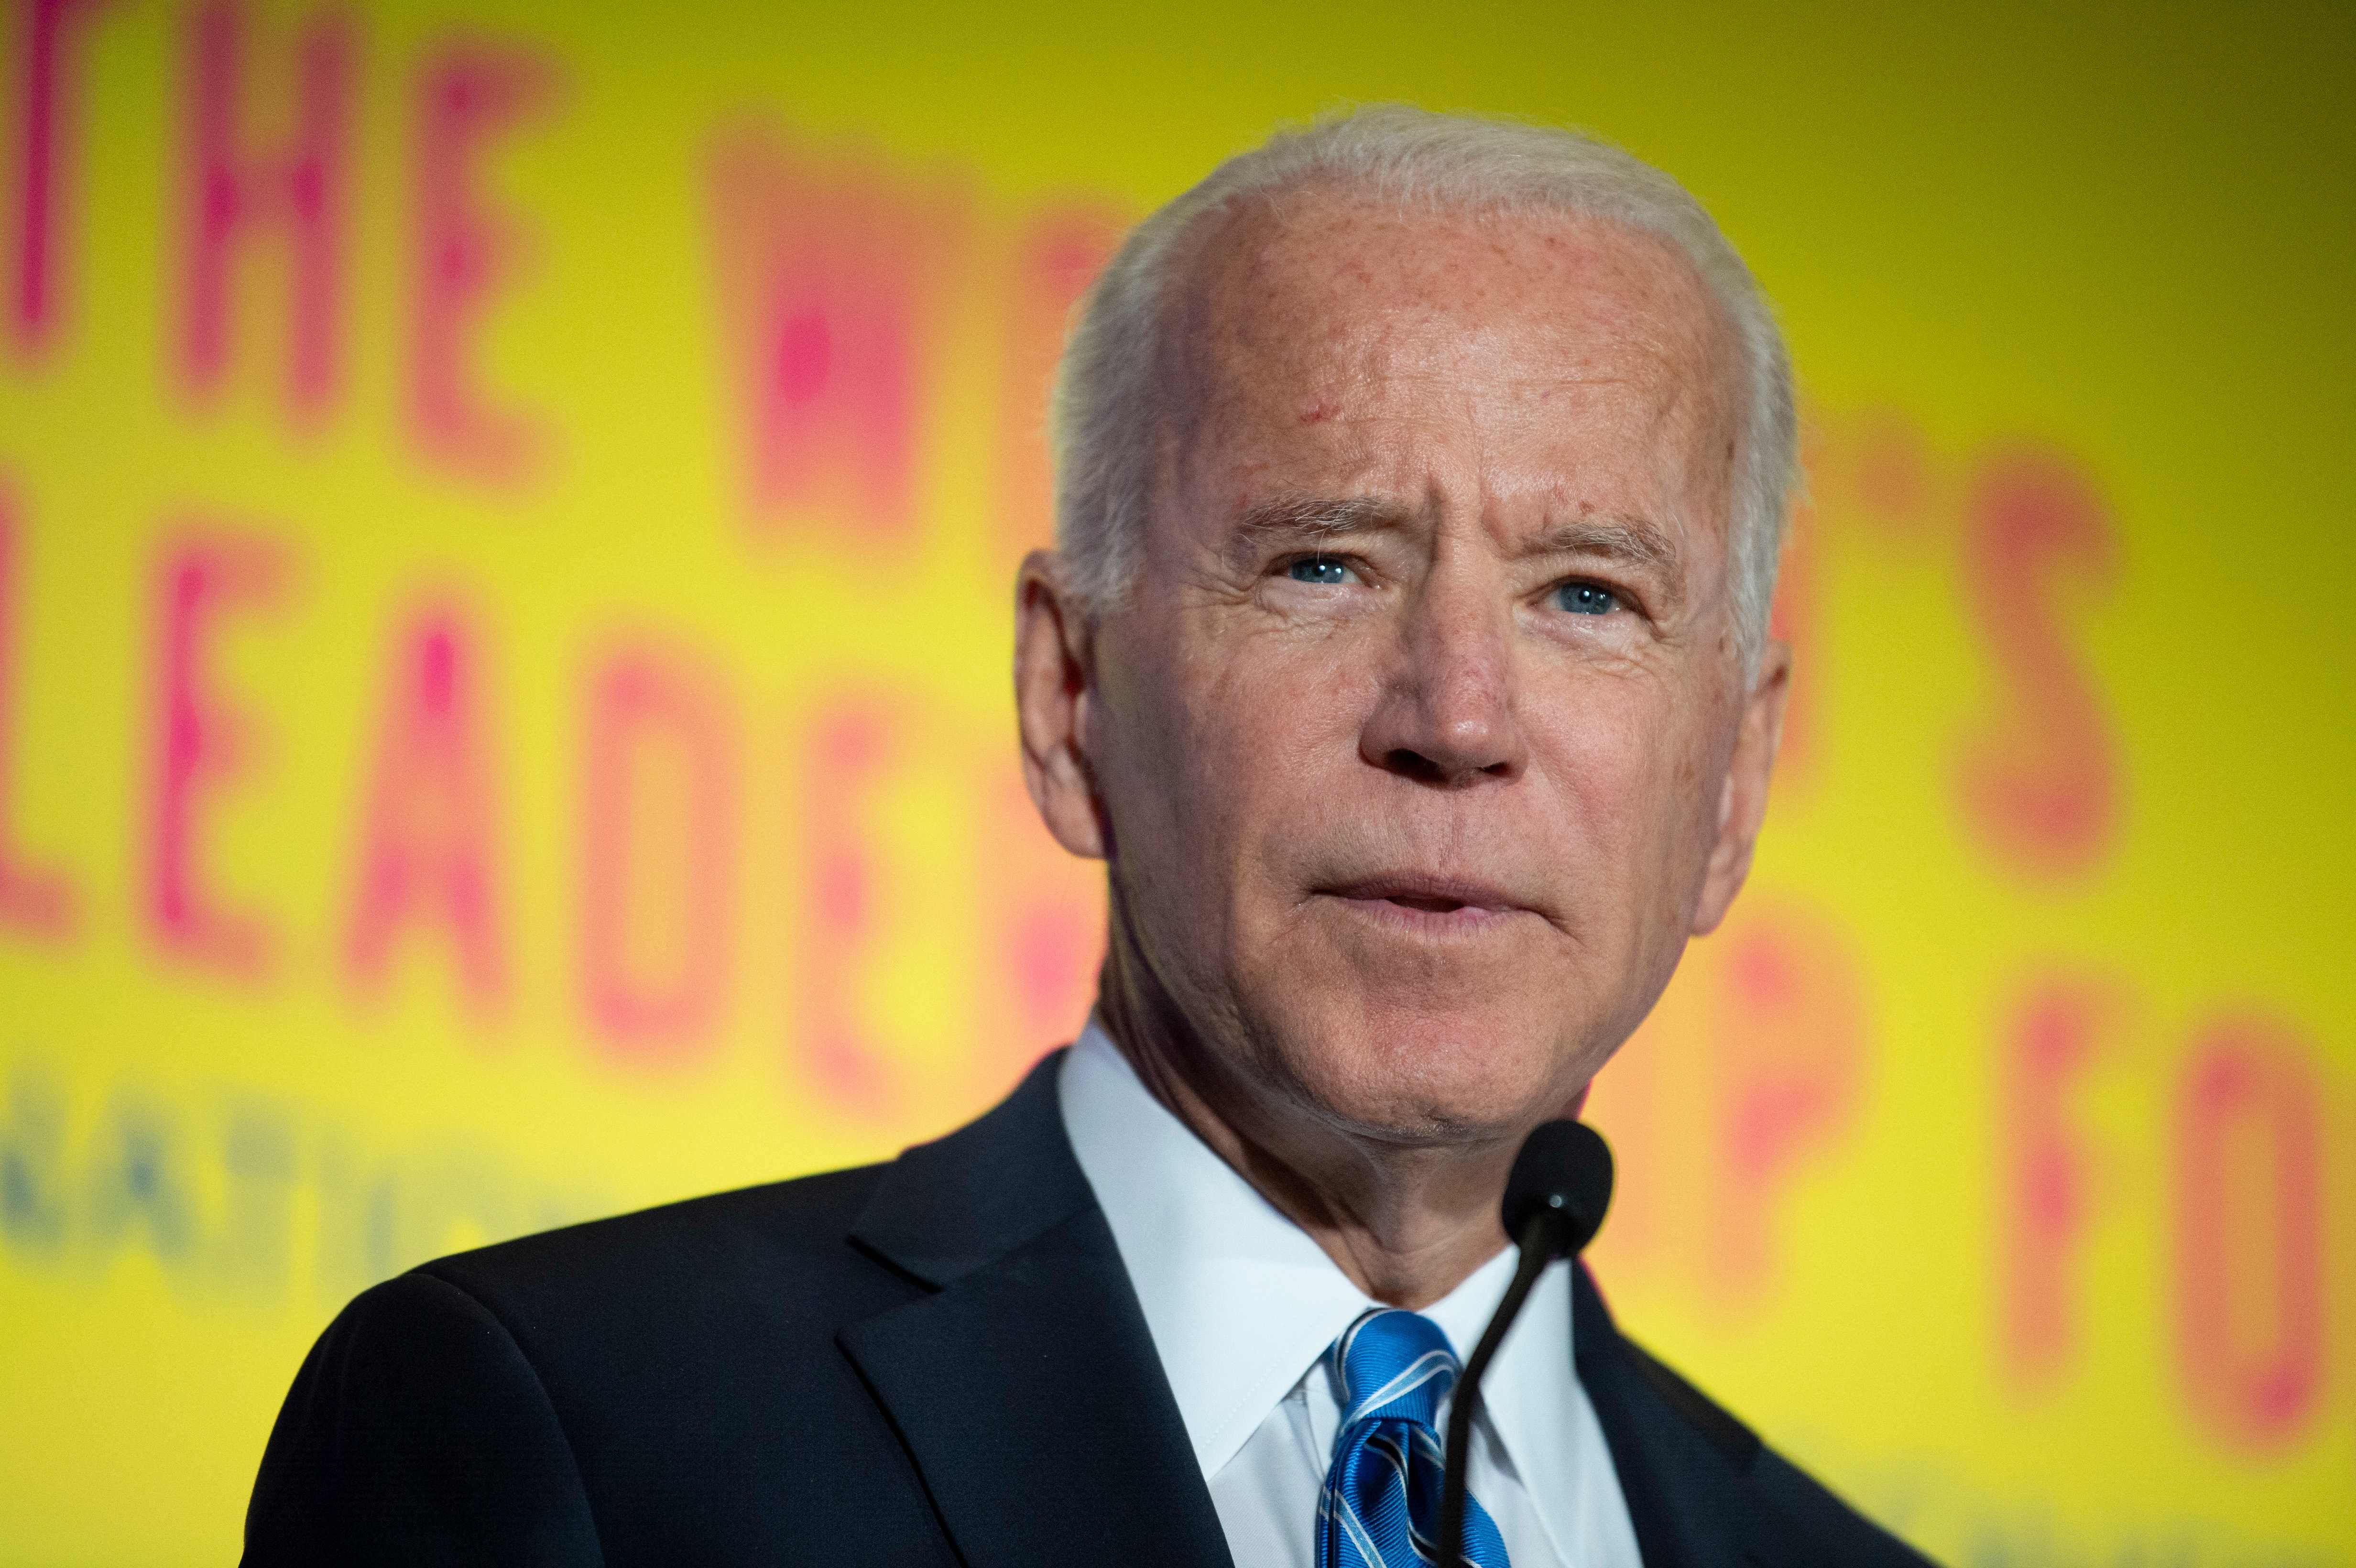 Joe Biden, precandidato presidencial demócrata para las elecciones 2020 en Estados Unidos. (Foto Prensa Libre: AFP)